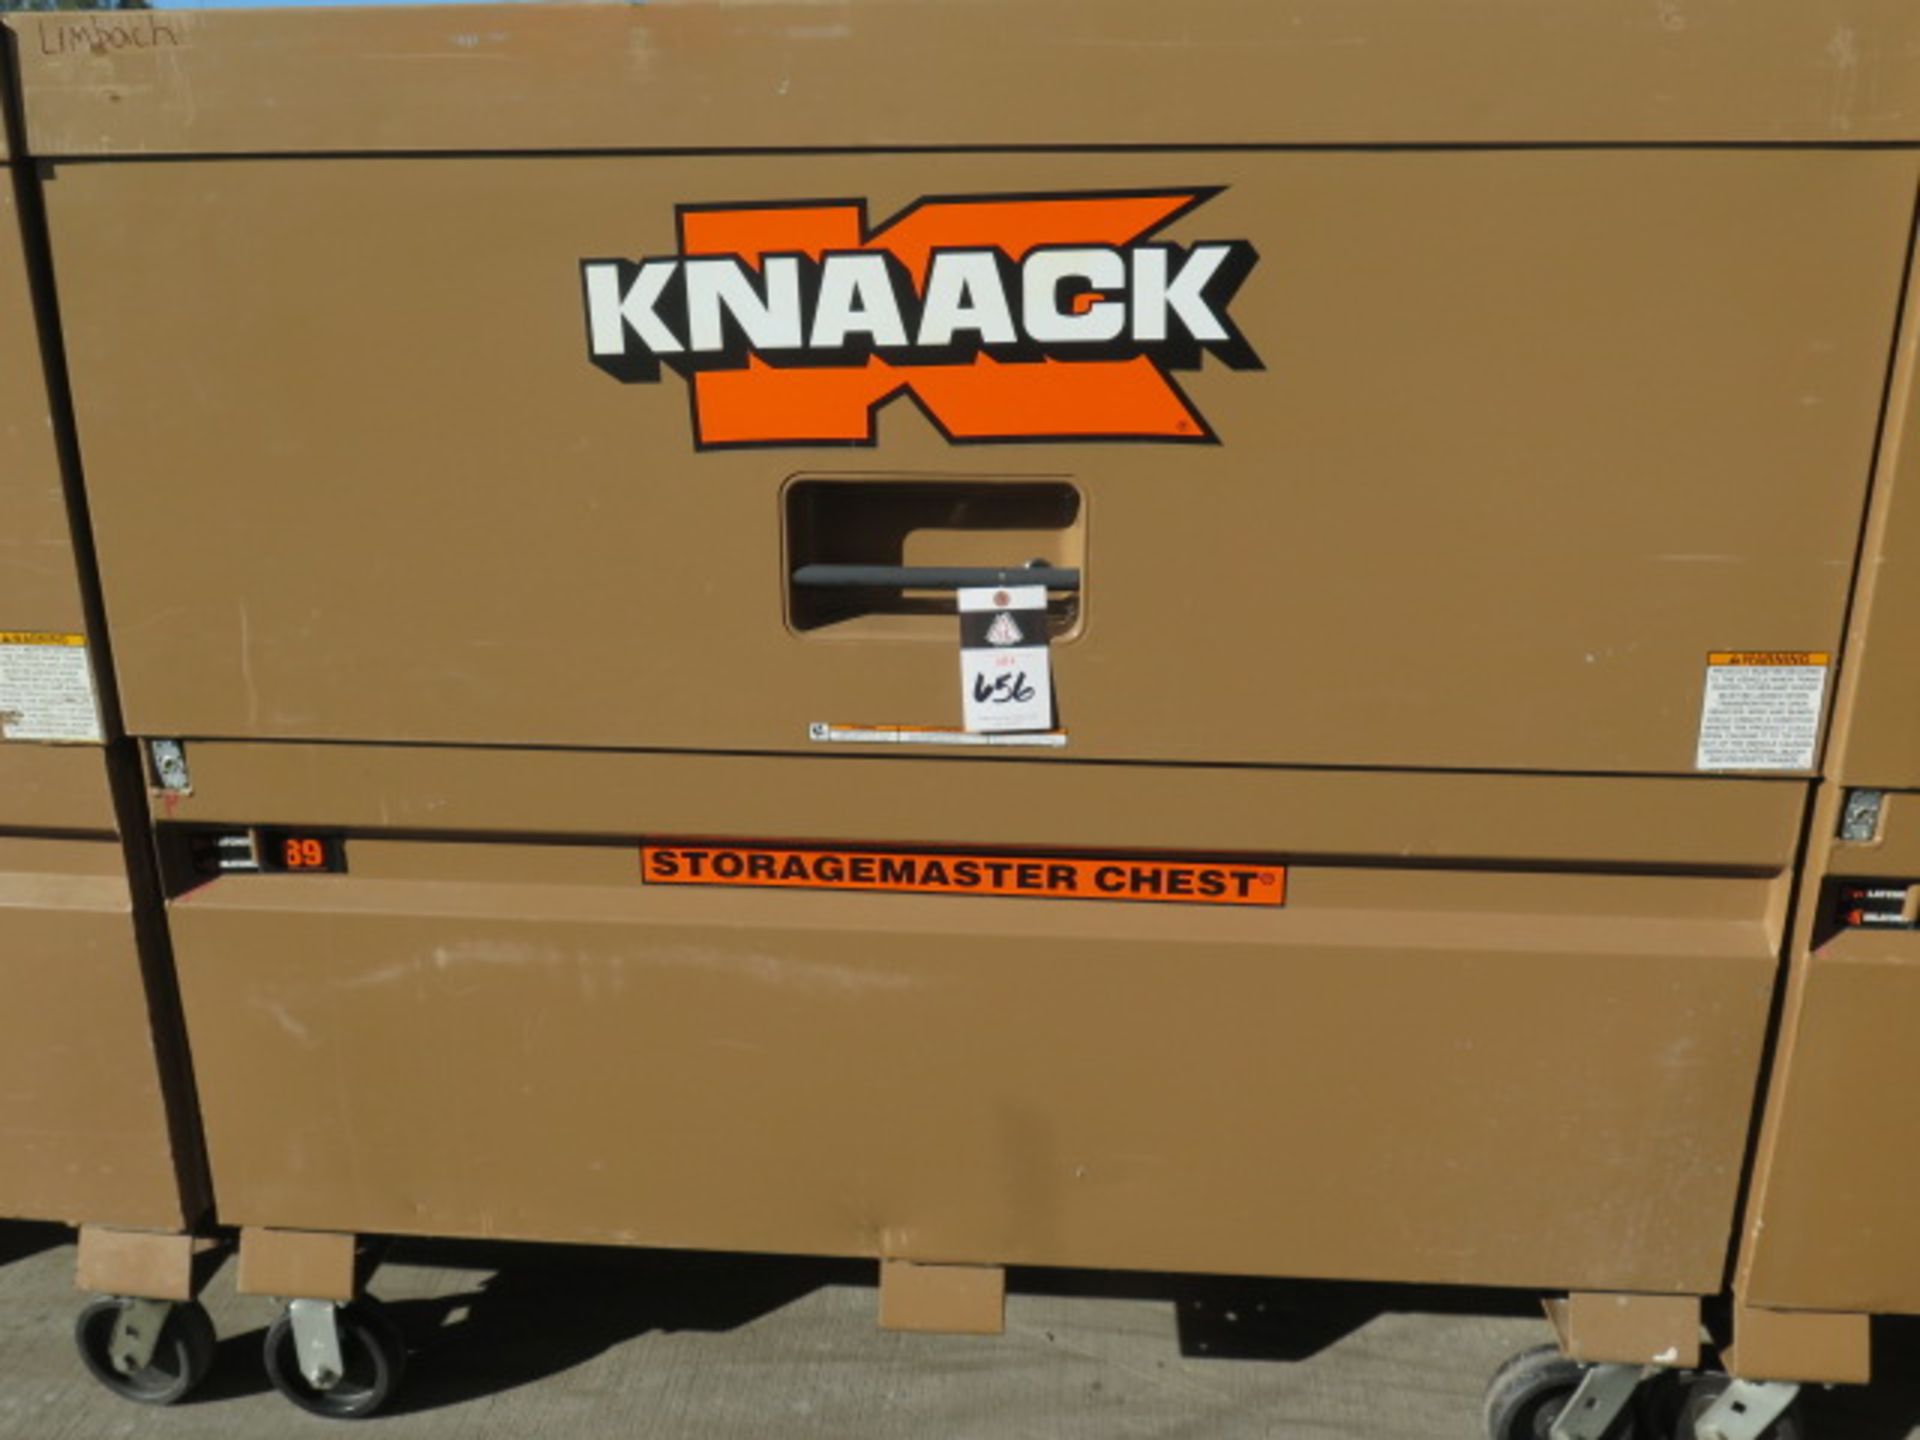 Knaack mdl. 89 Rolling Job Box (SOLD AS-IS - NO WARRANTY)